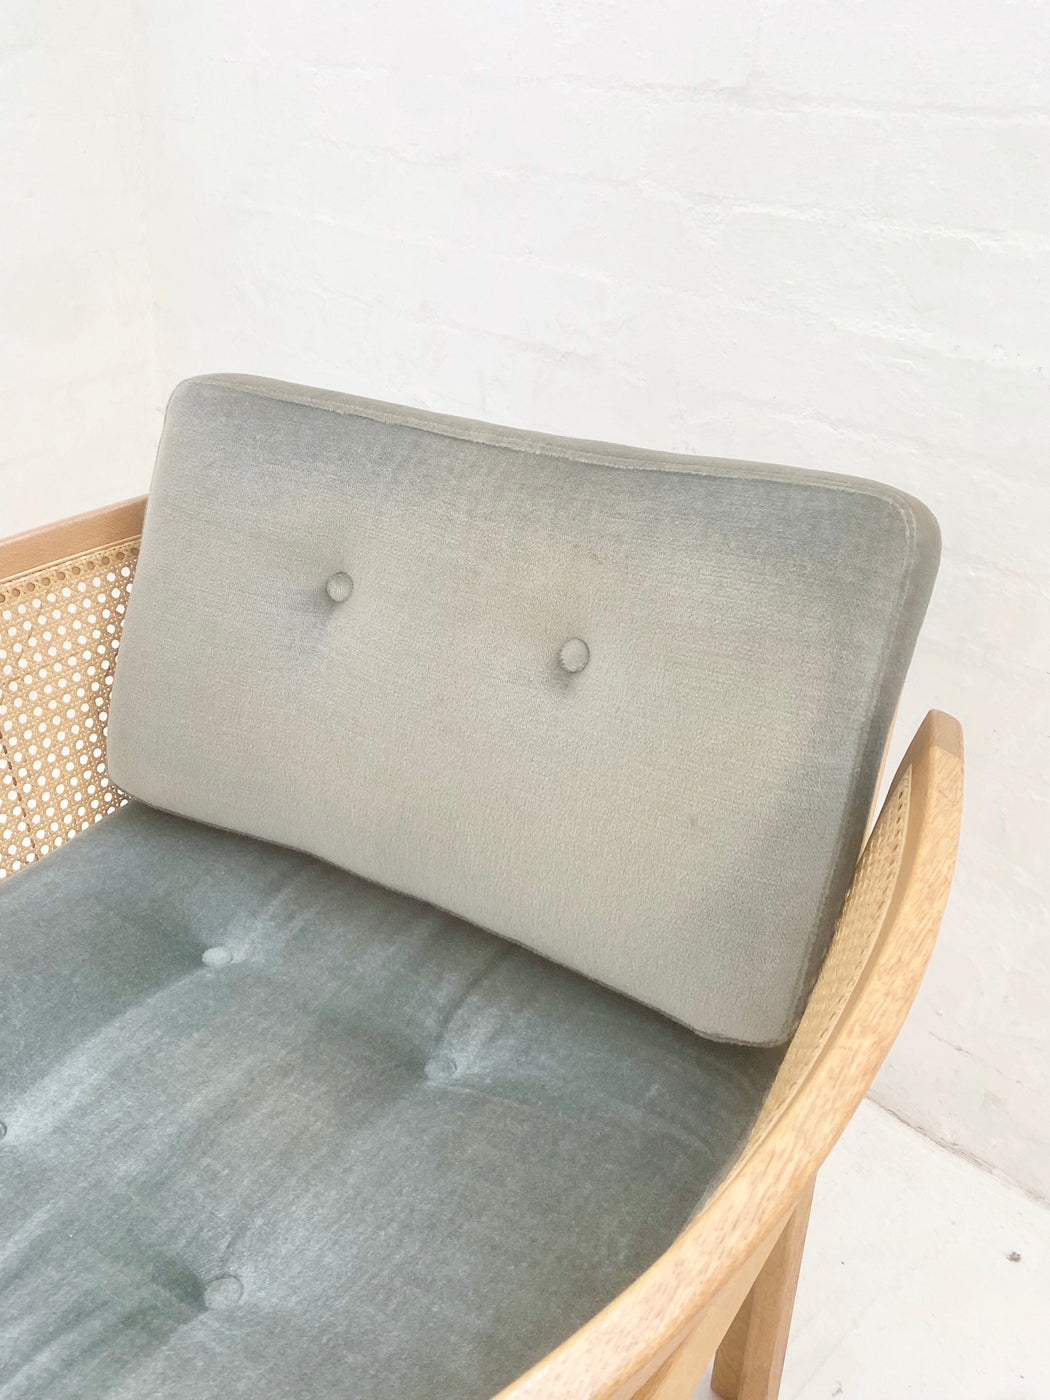 Illum Wikkelsø 'Plexus' Lounge Chair